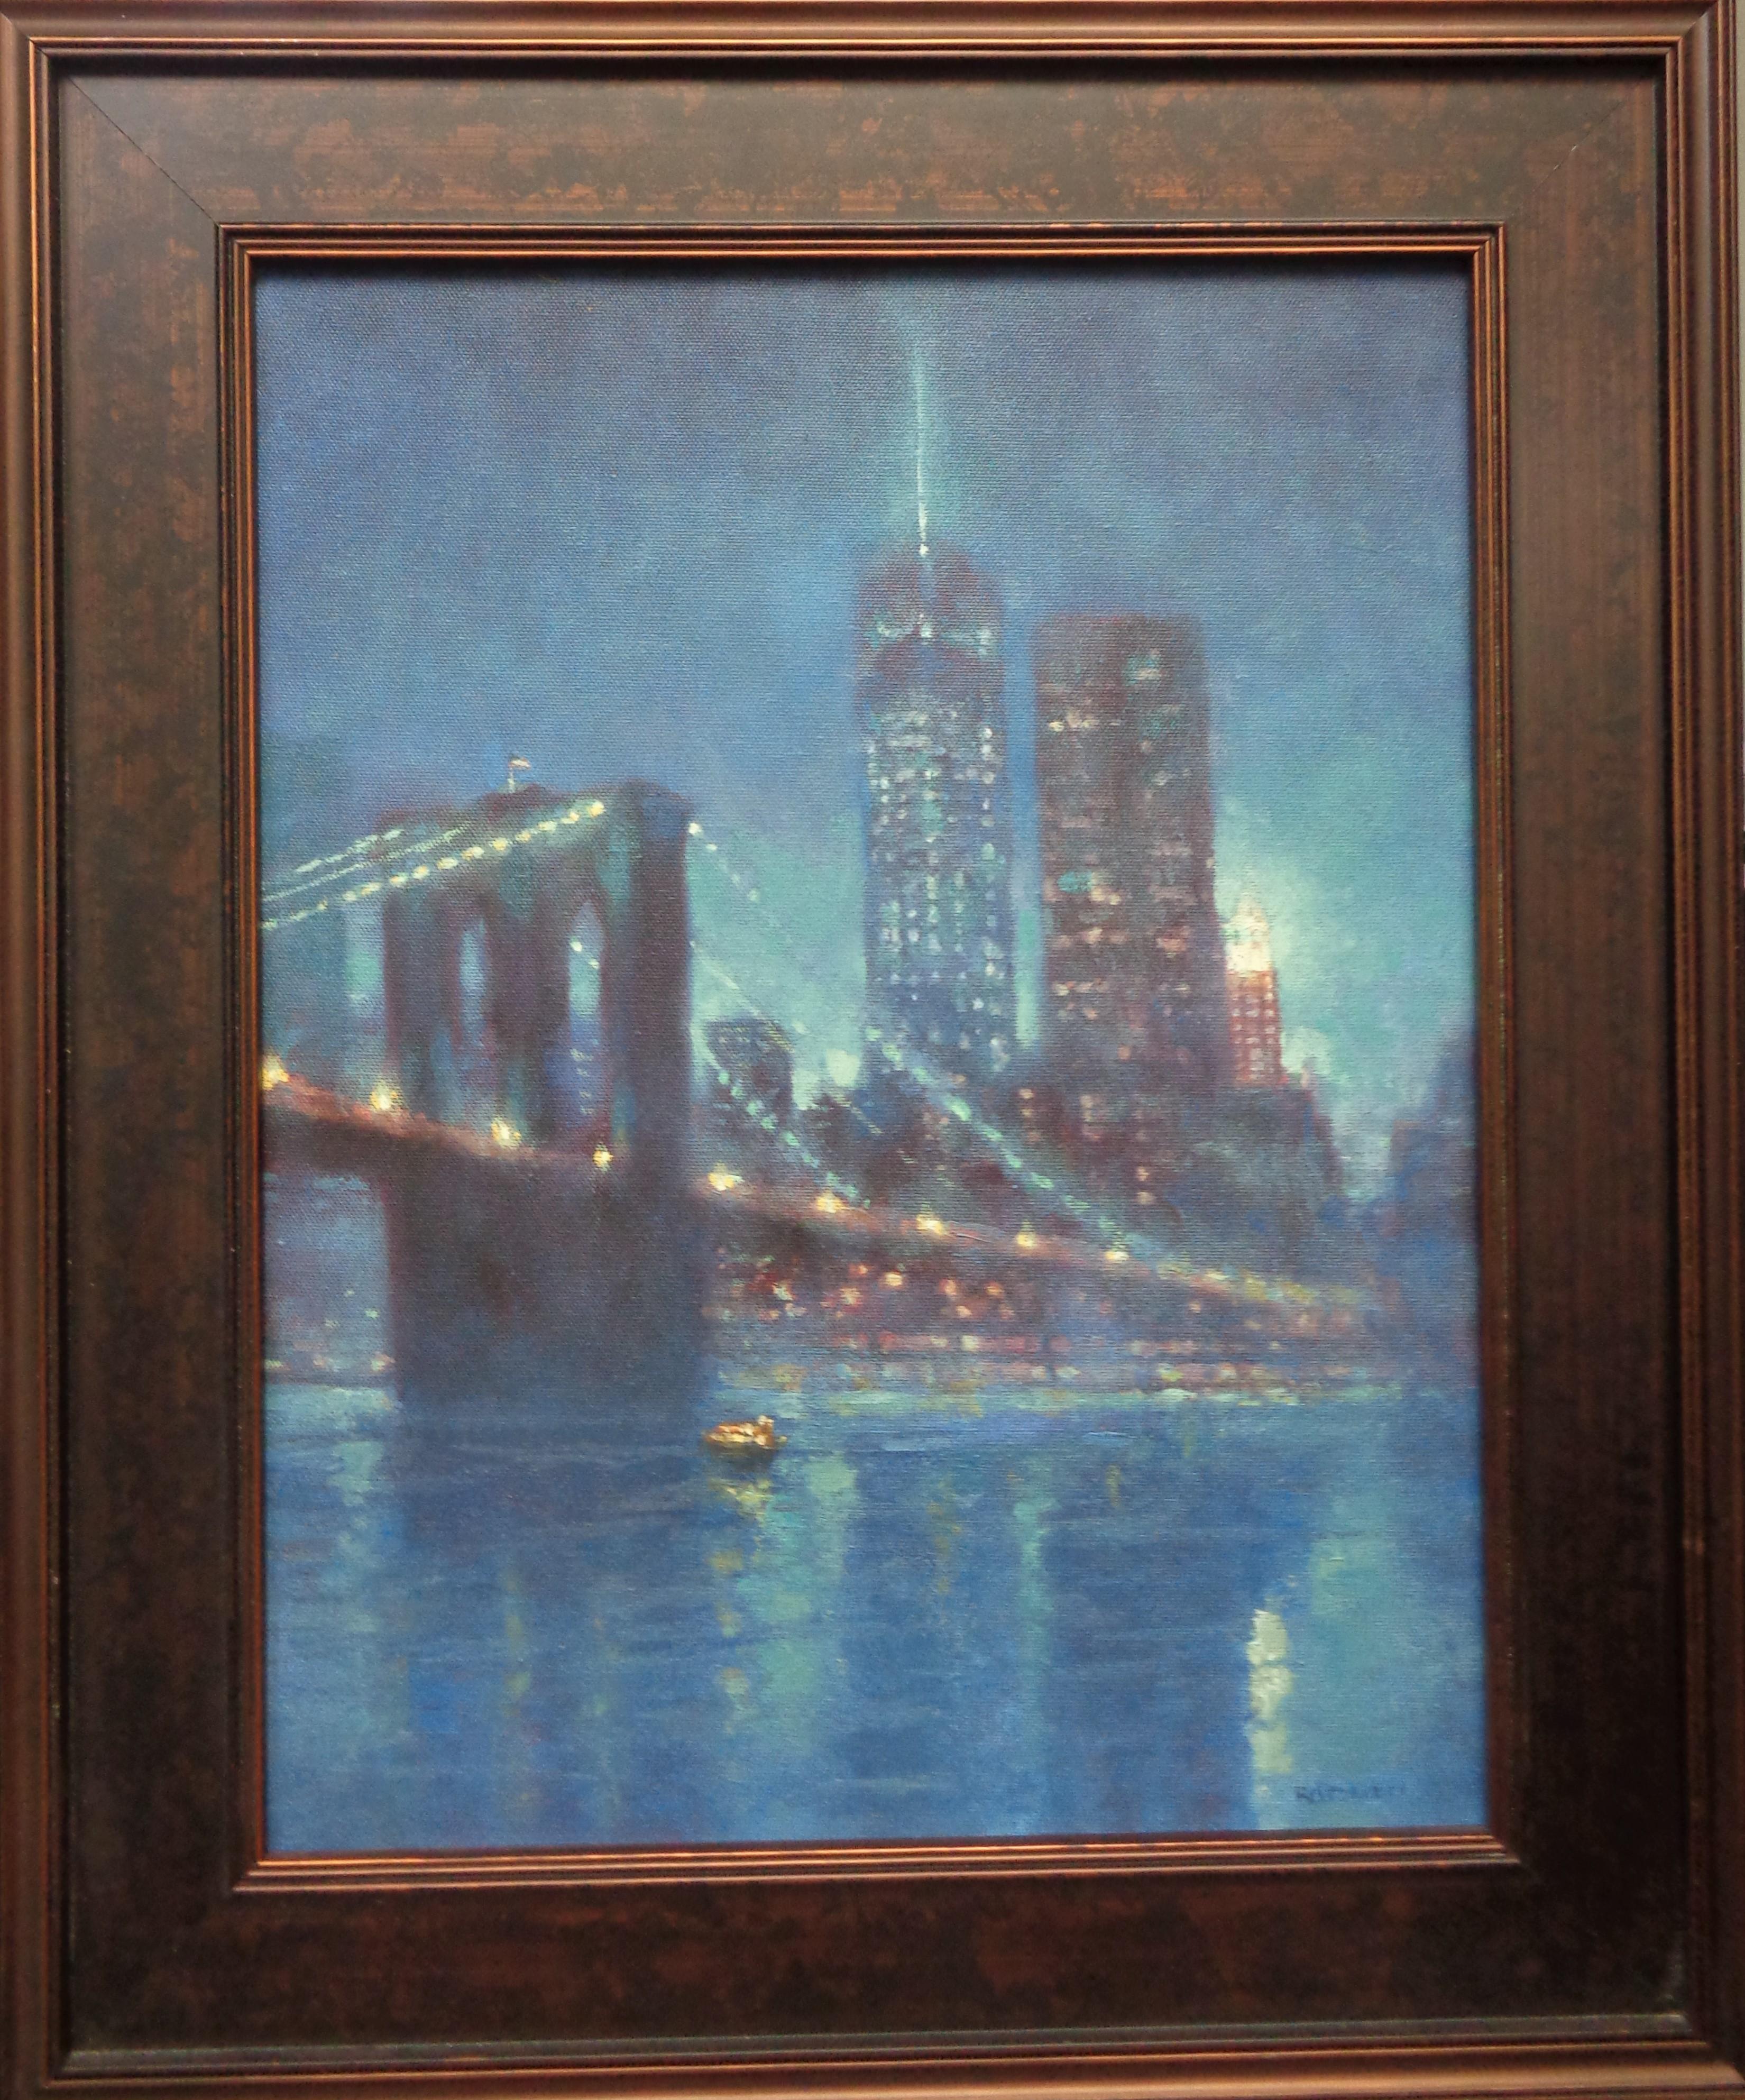 Mystical Evening Freedom Tower est une peinture à l'huile sur toile de l'artiste contemporain primé Michael Budden, qui met en valeur la nouvelle Freedom Tower dans le sud de Manhattan par une soirée brumeuse. L'image est de 18 x 14 et de 23,5 x